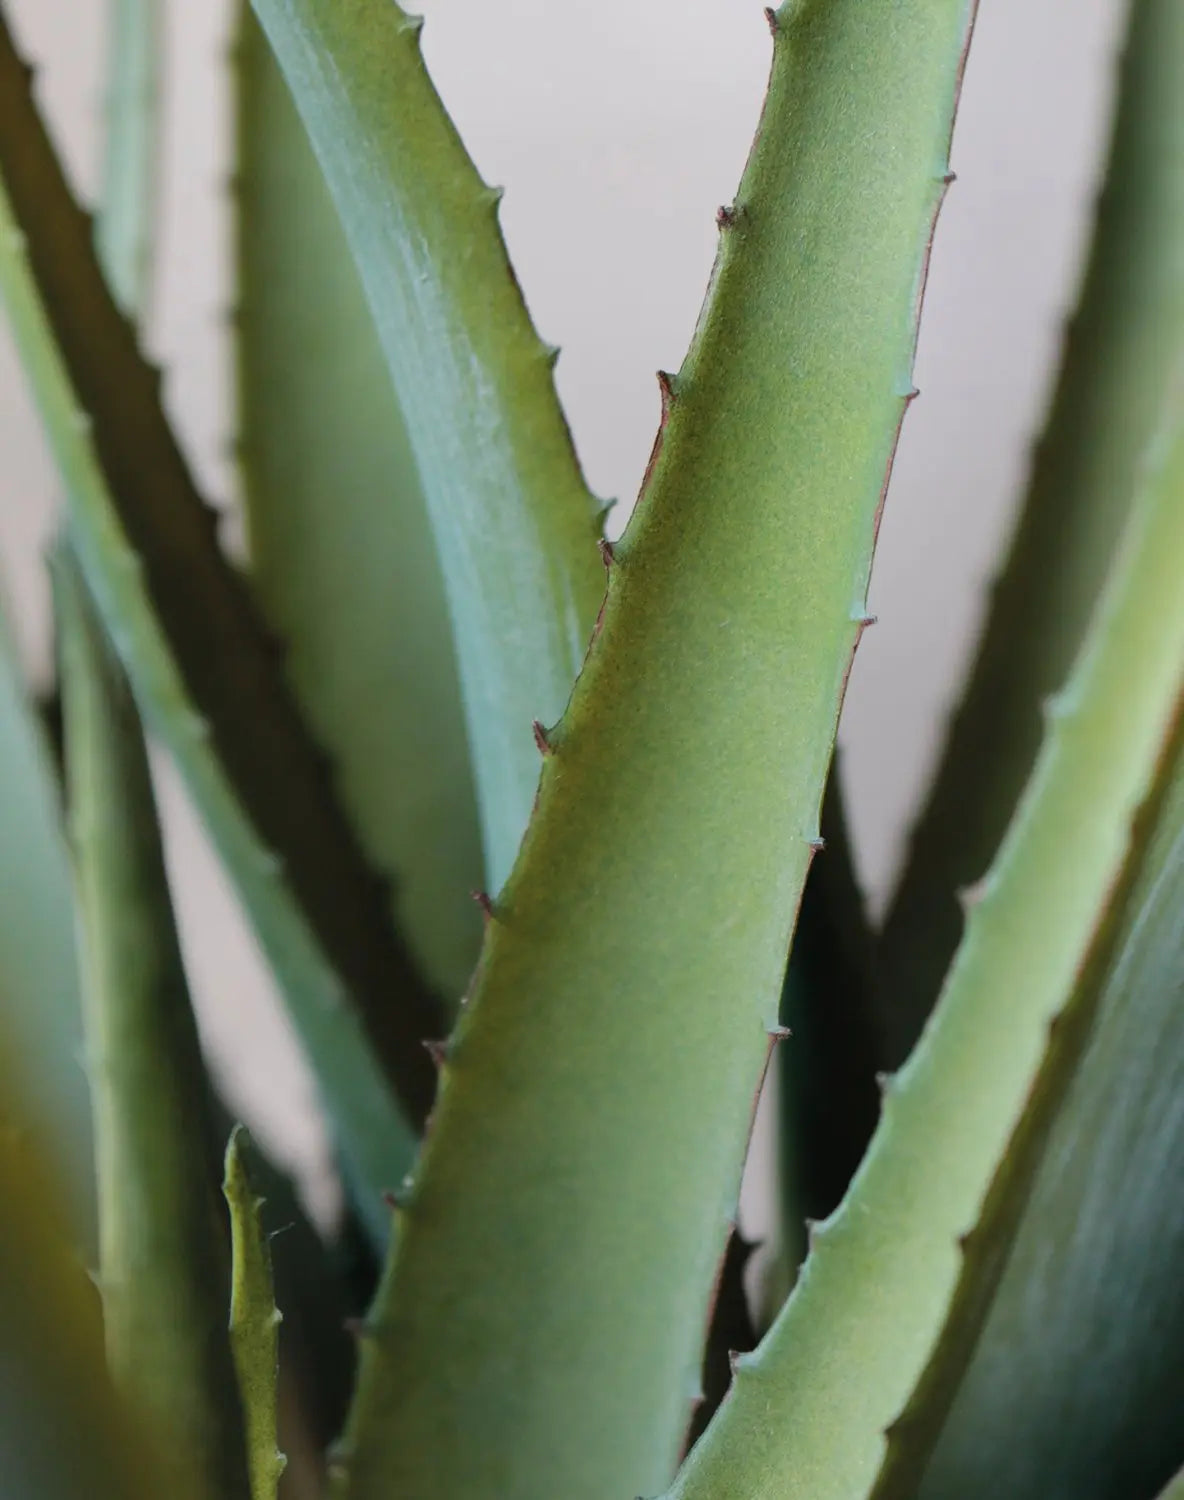 Künstliche Aloe - Yvonne | 53 cm